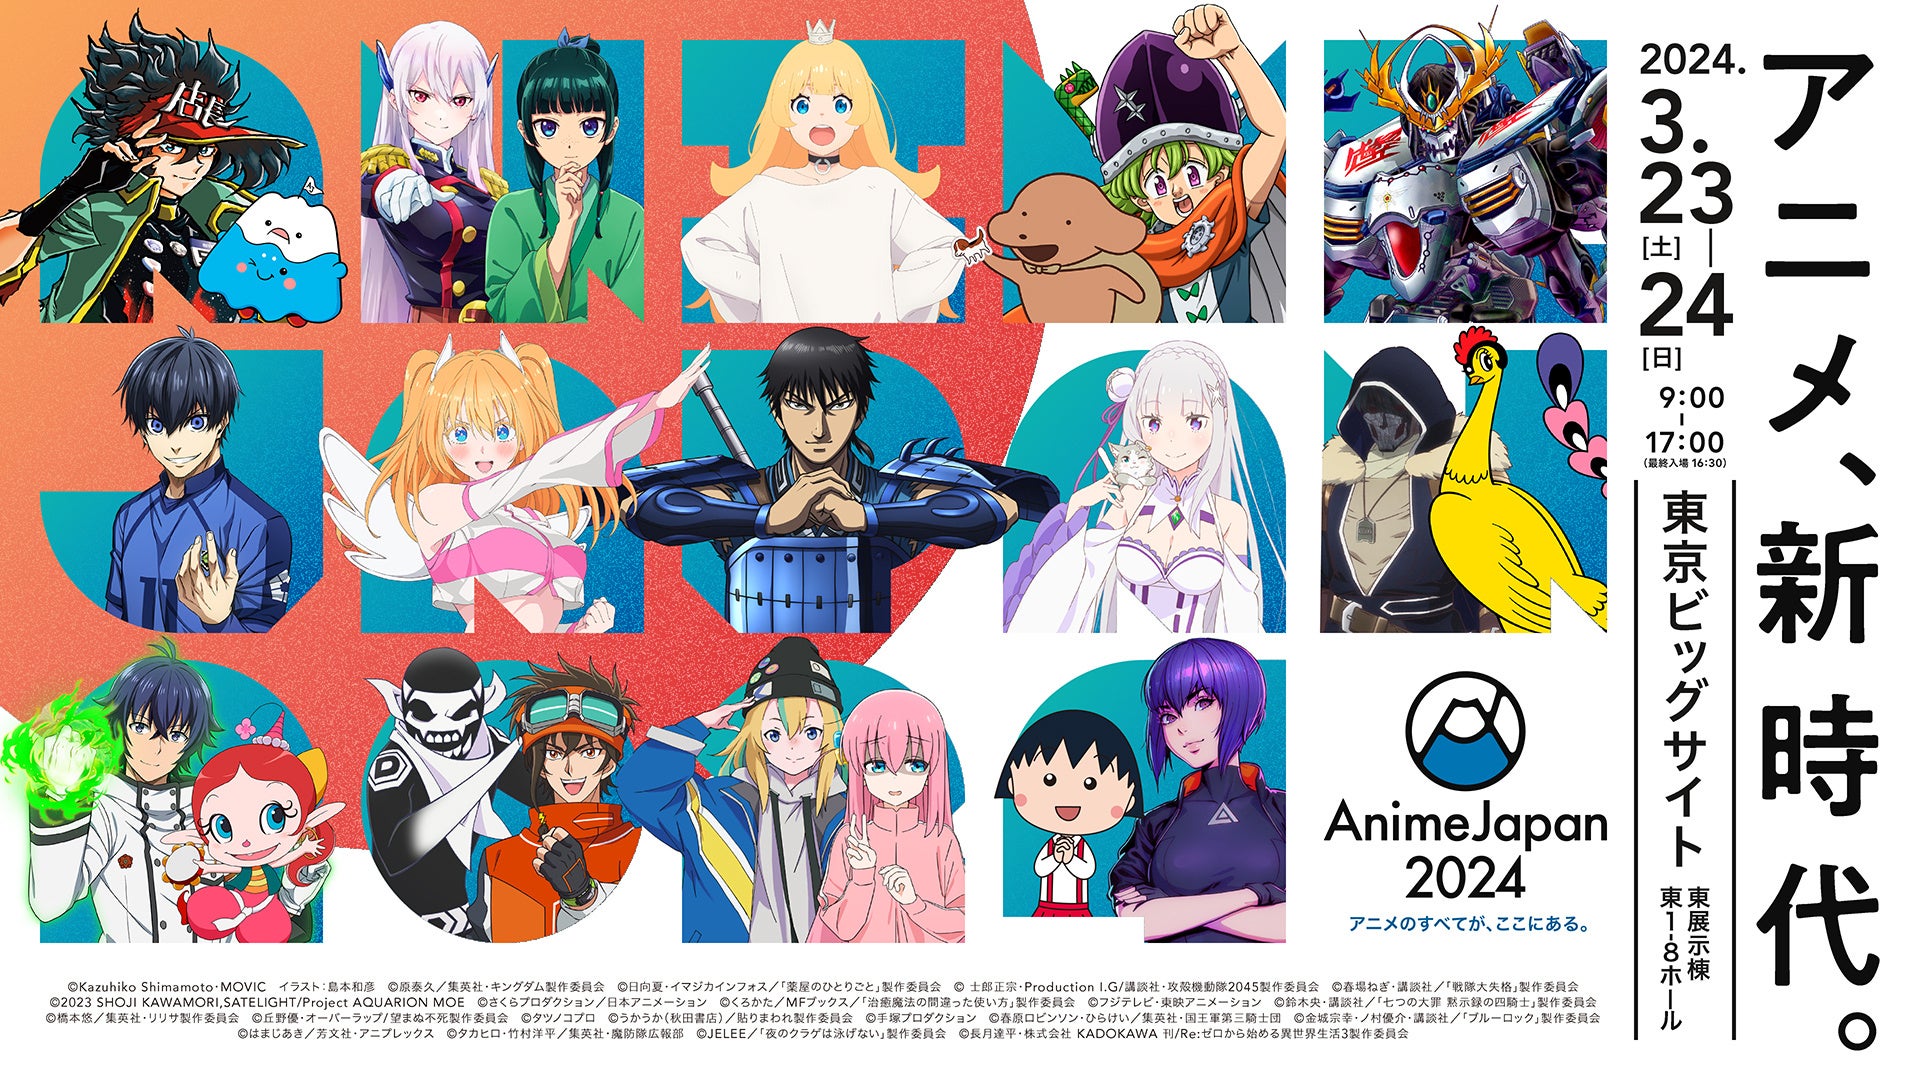 アニプレックス、KADOKAWA、TOHO animationなど過去最大規模の開催に‼世界最大級のアニメイベント「AnimeJapan 2024」出展社情報&ビジュアルが解禁！